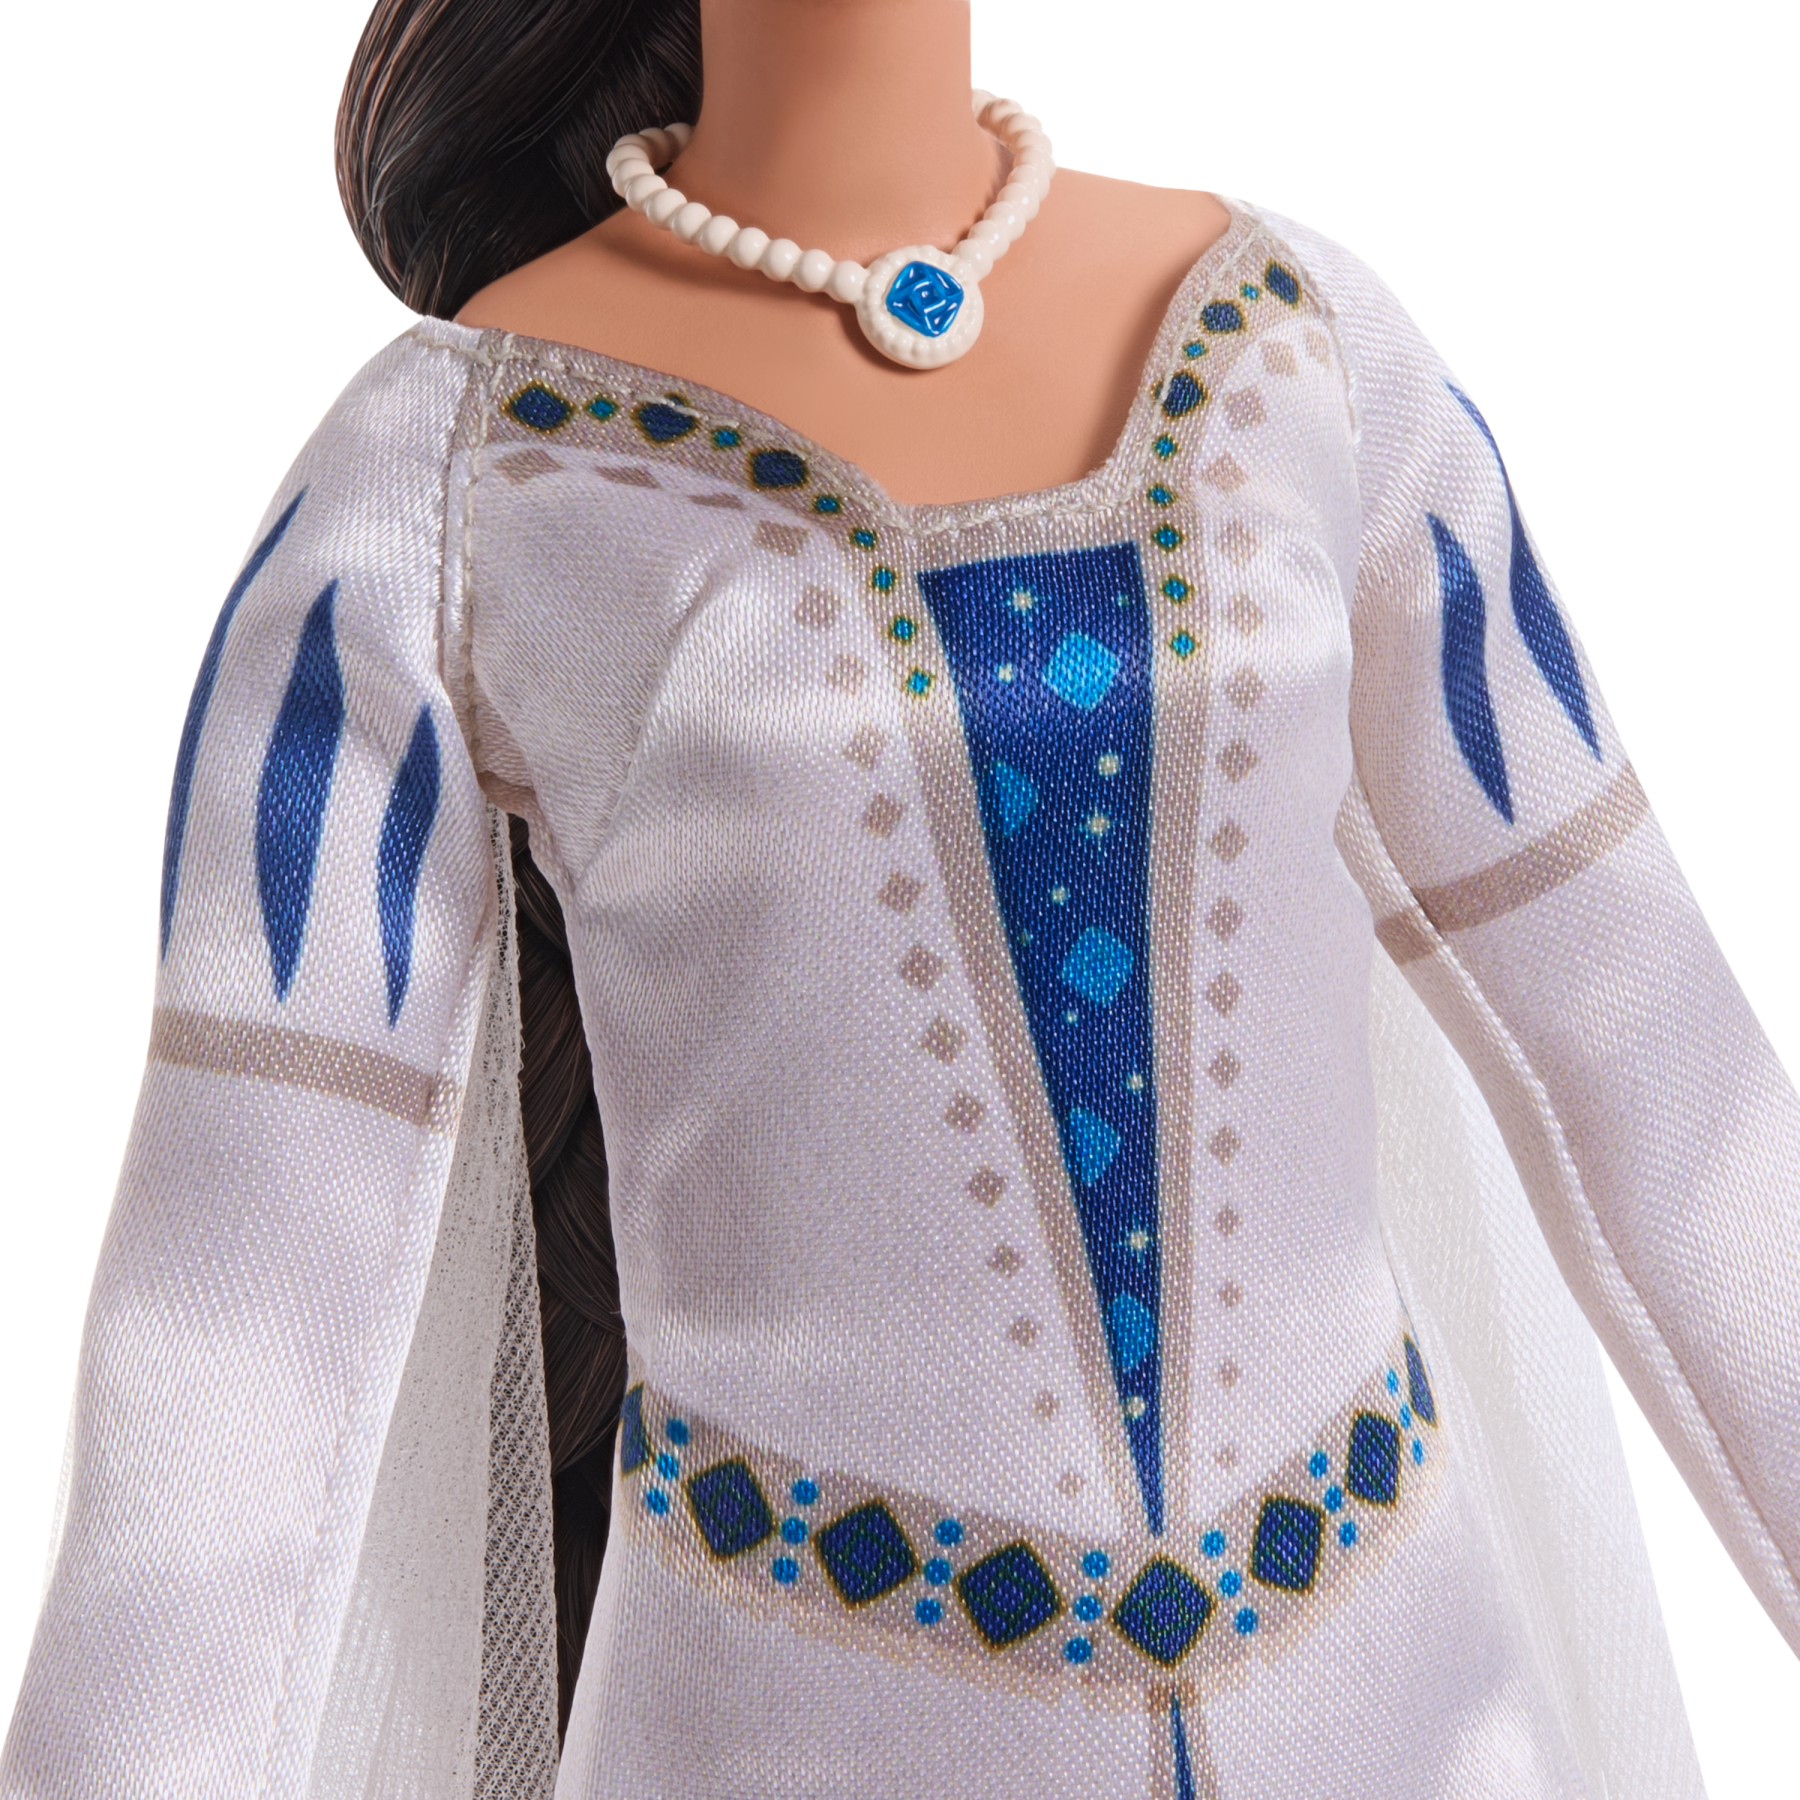 Disney wish regina amaya di rosas, bambola snodata con abito regale, corona e accessori - DISNEY PRINCESS, WISH